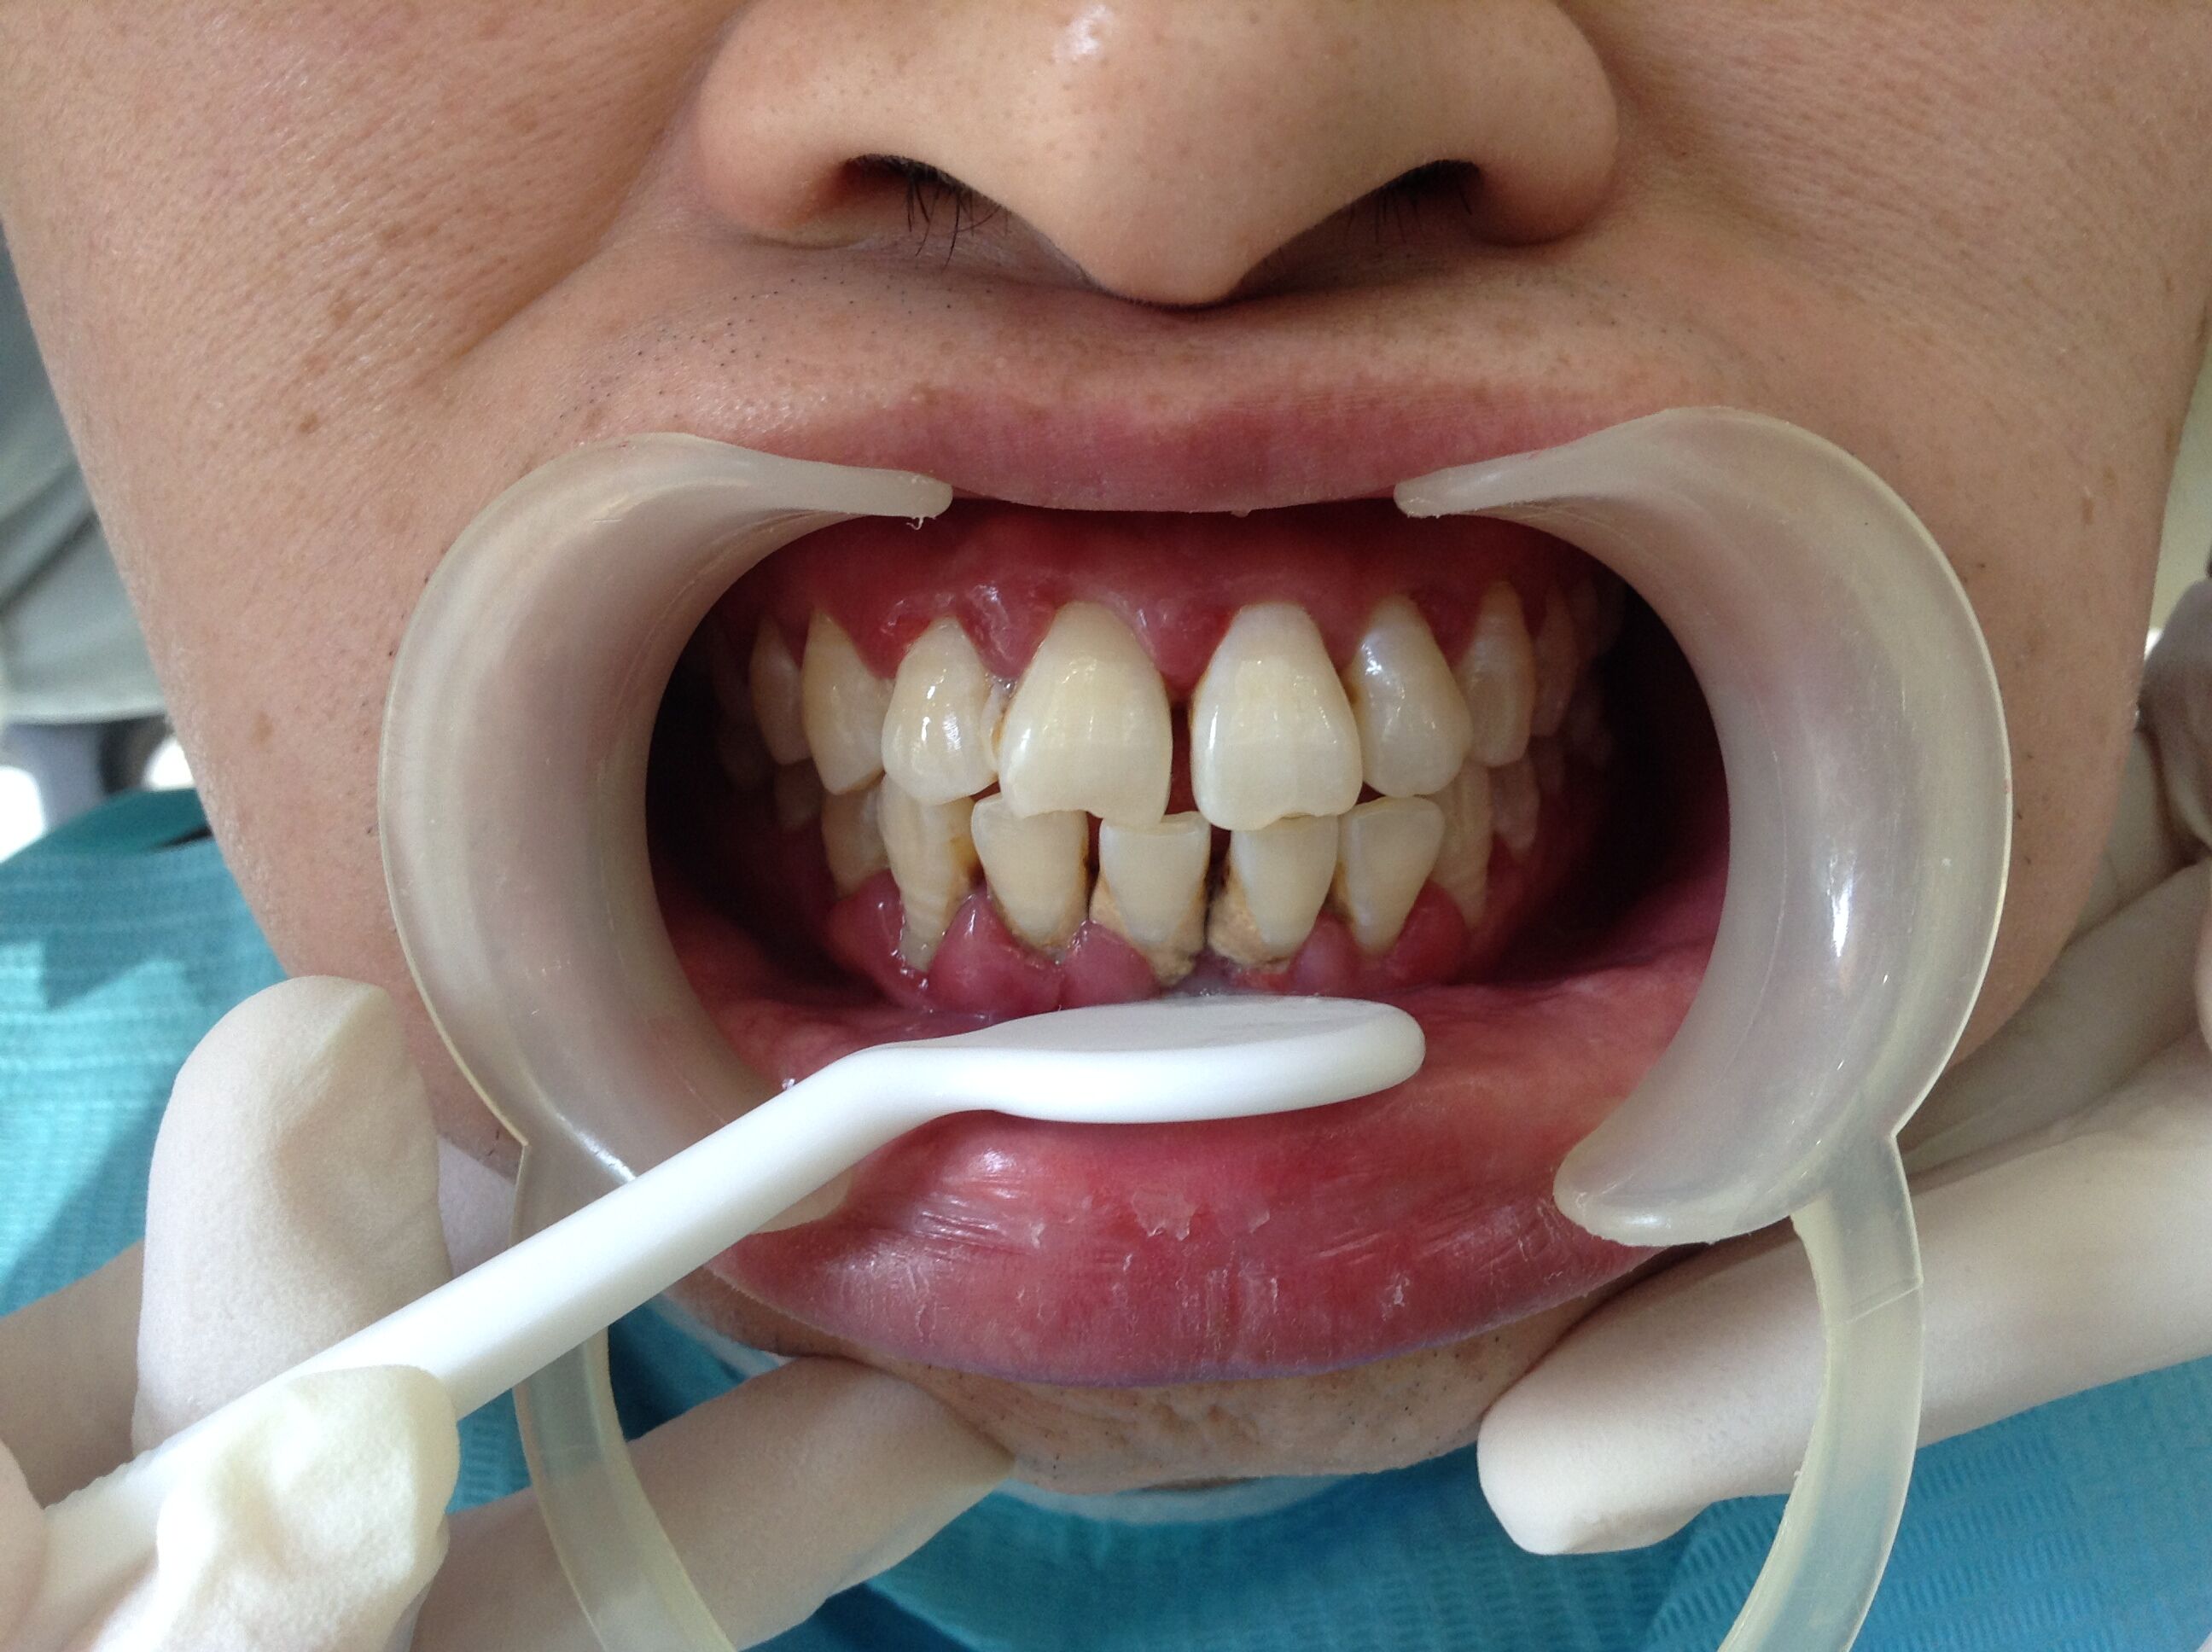 牙周病综合症牙周病治疗后牙龈恢复健康的颜色和形态_图片_互动百科